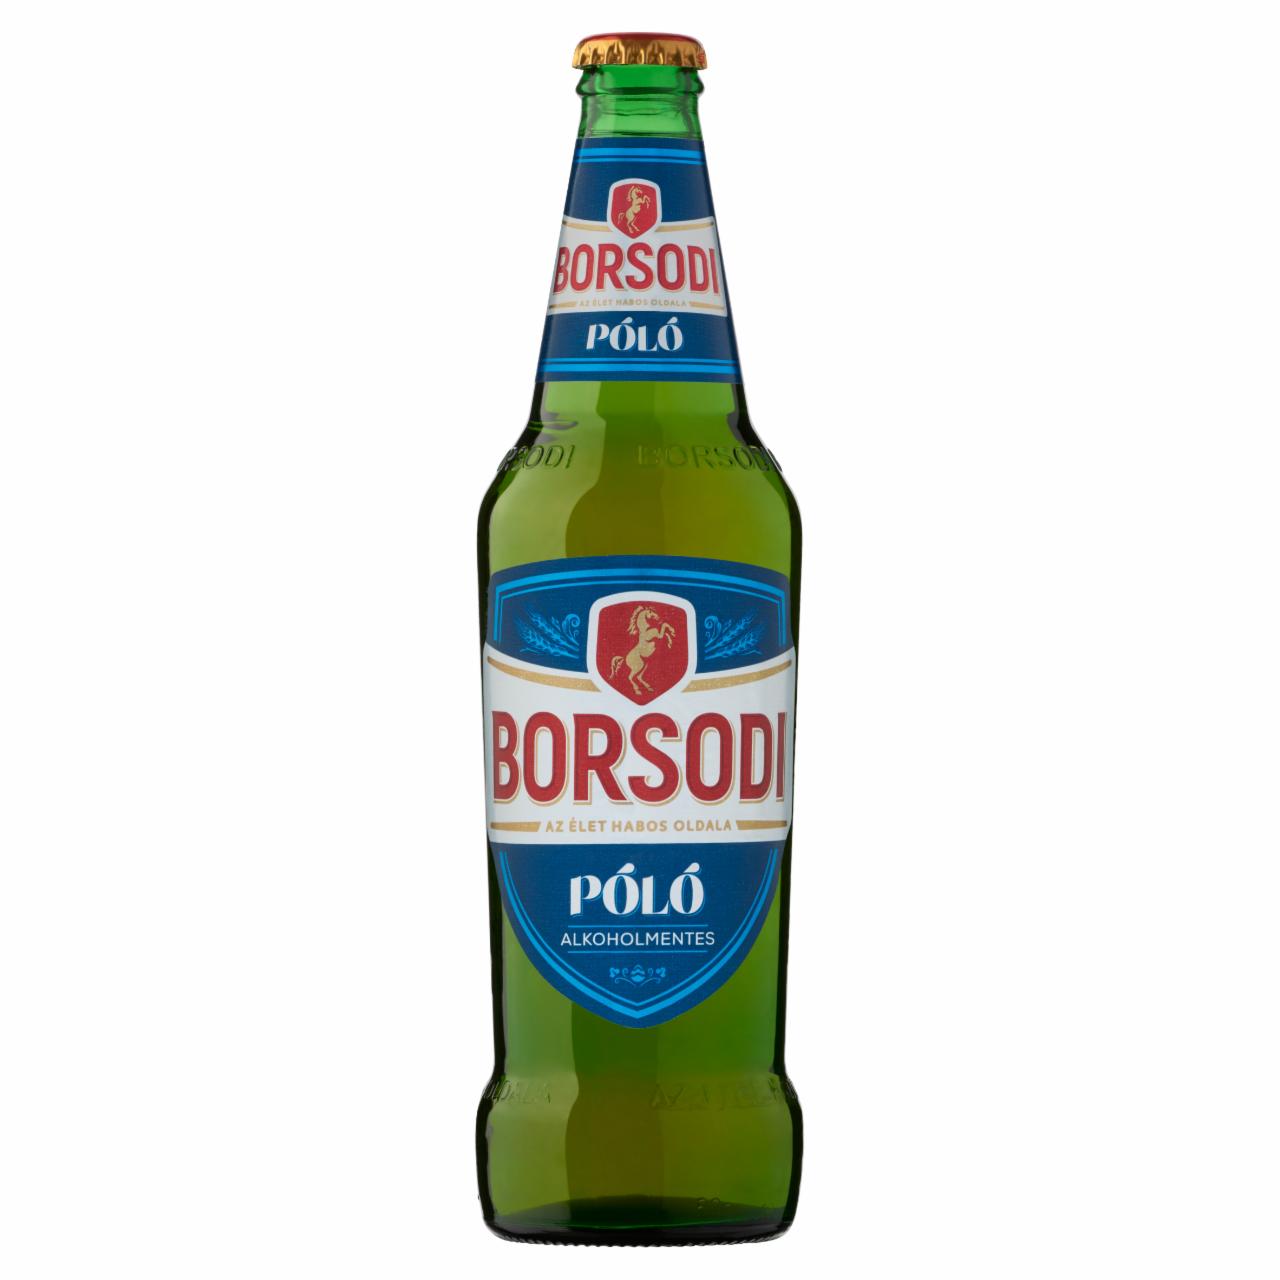 Képek - Borsodi Póló alkoholmentes világos sör 0,5% 0,5 l